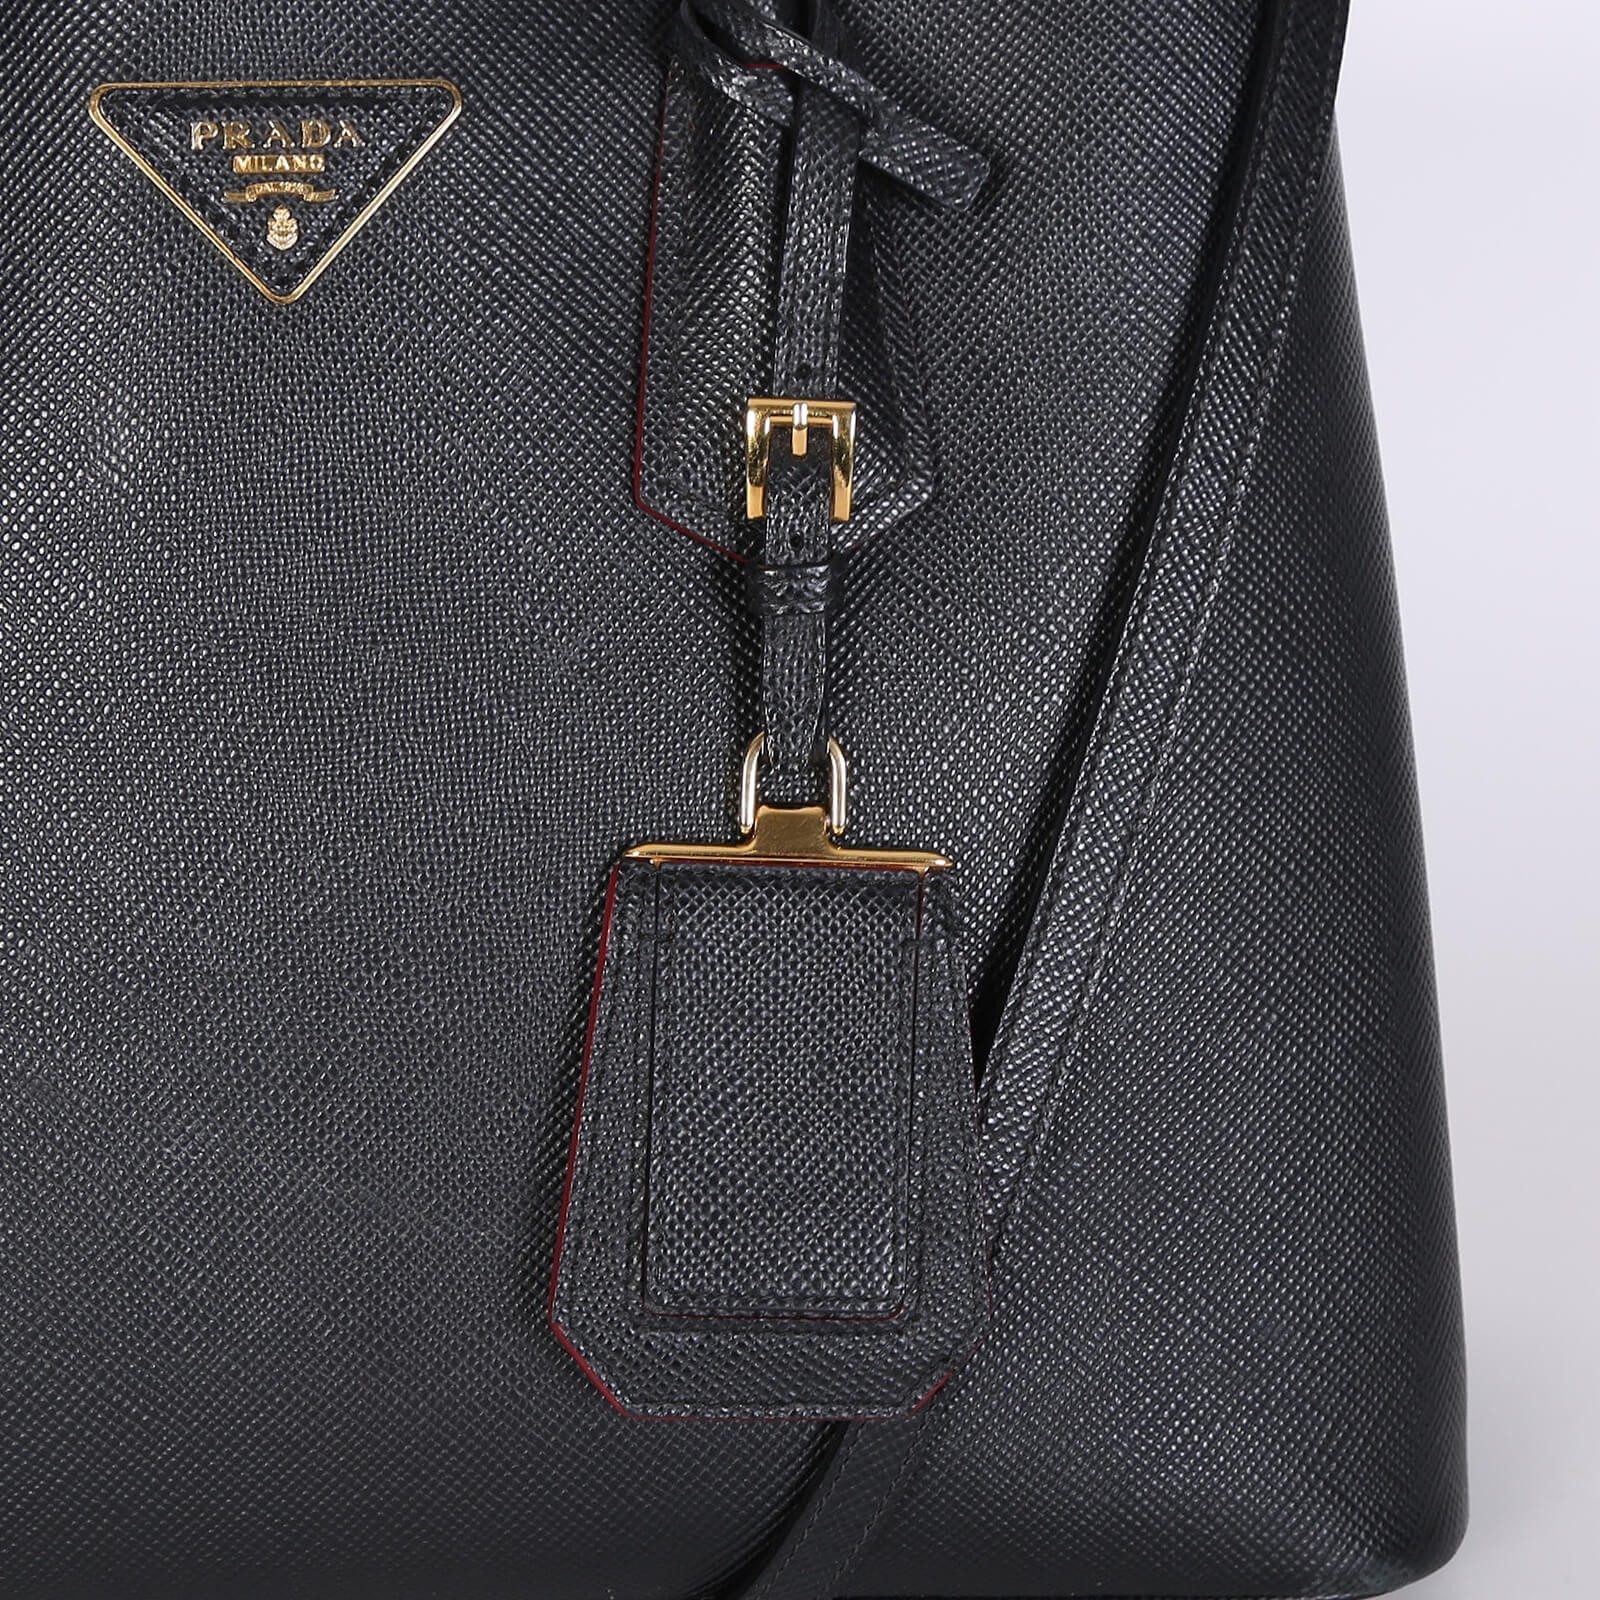 Prada Saffiano Cuir Double Bag, Black/Red (Nero+Ciliegia)